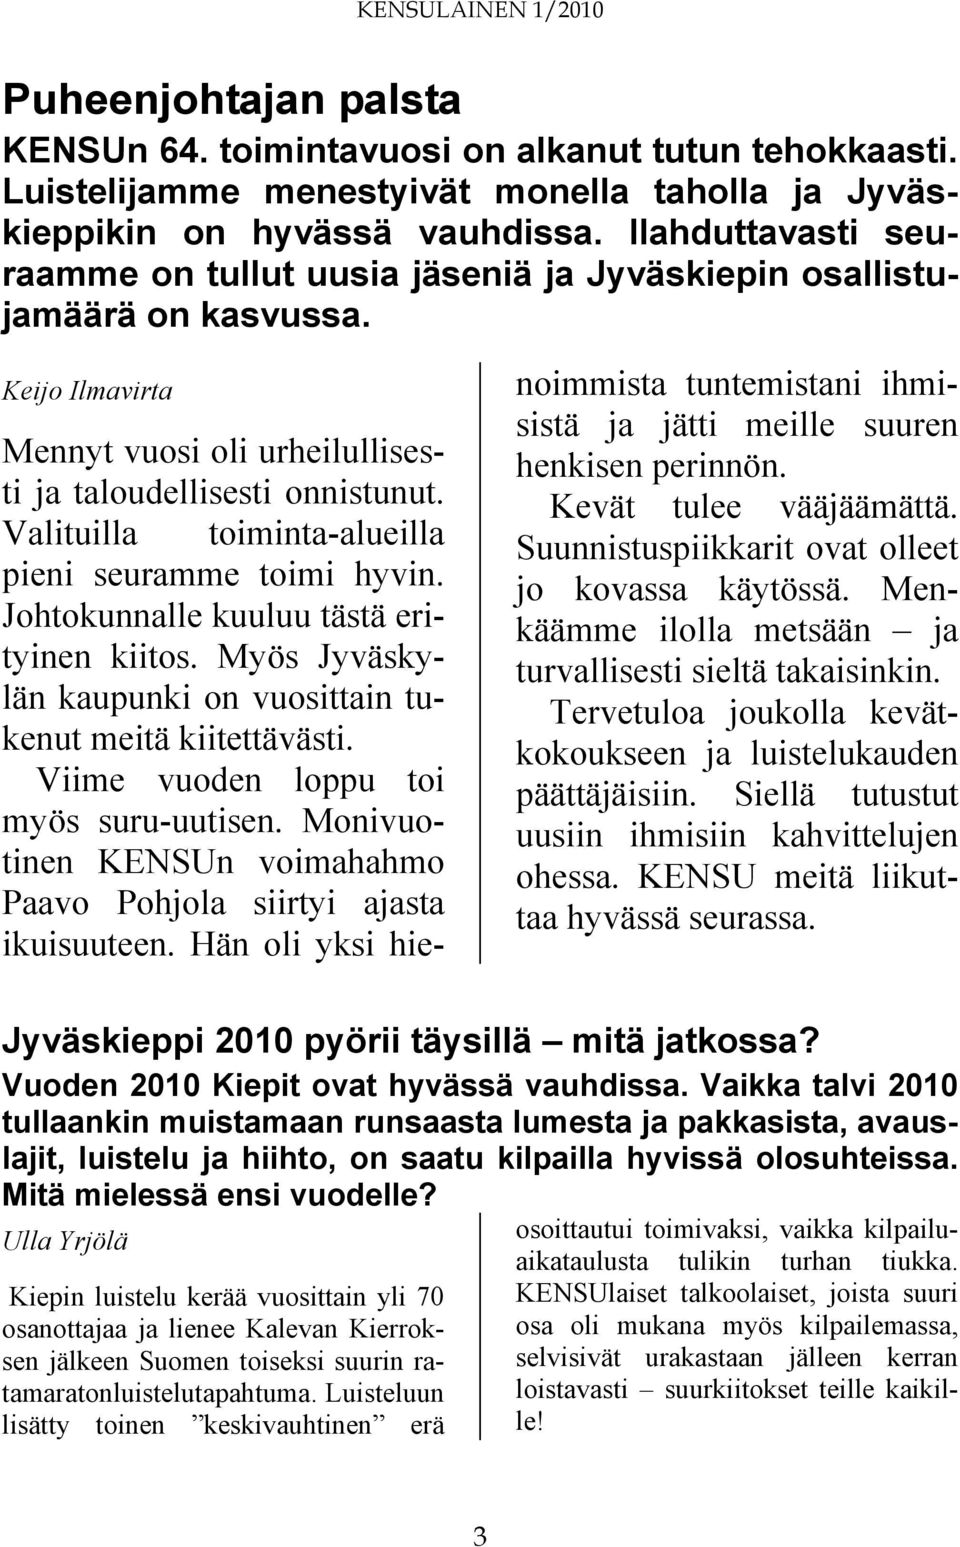 Valituilla toiminta-alueilla pieni seuramme toimi hyvin. Johtokunnalle kuuluu tästä erityinen kiitos. Myös Jyväskylän kaupunki on vuosittain tukenut meitä kiitettävästi.